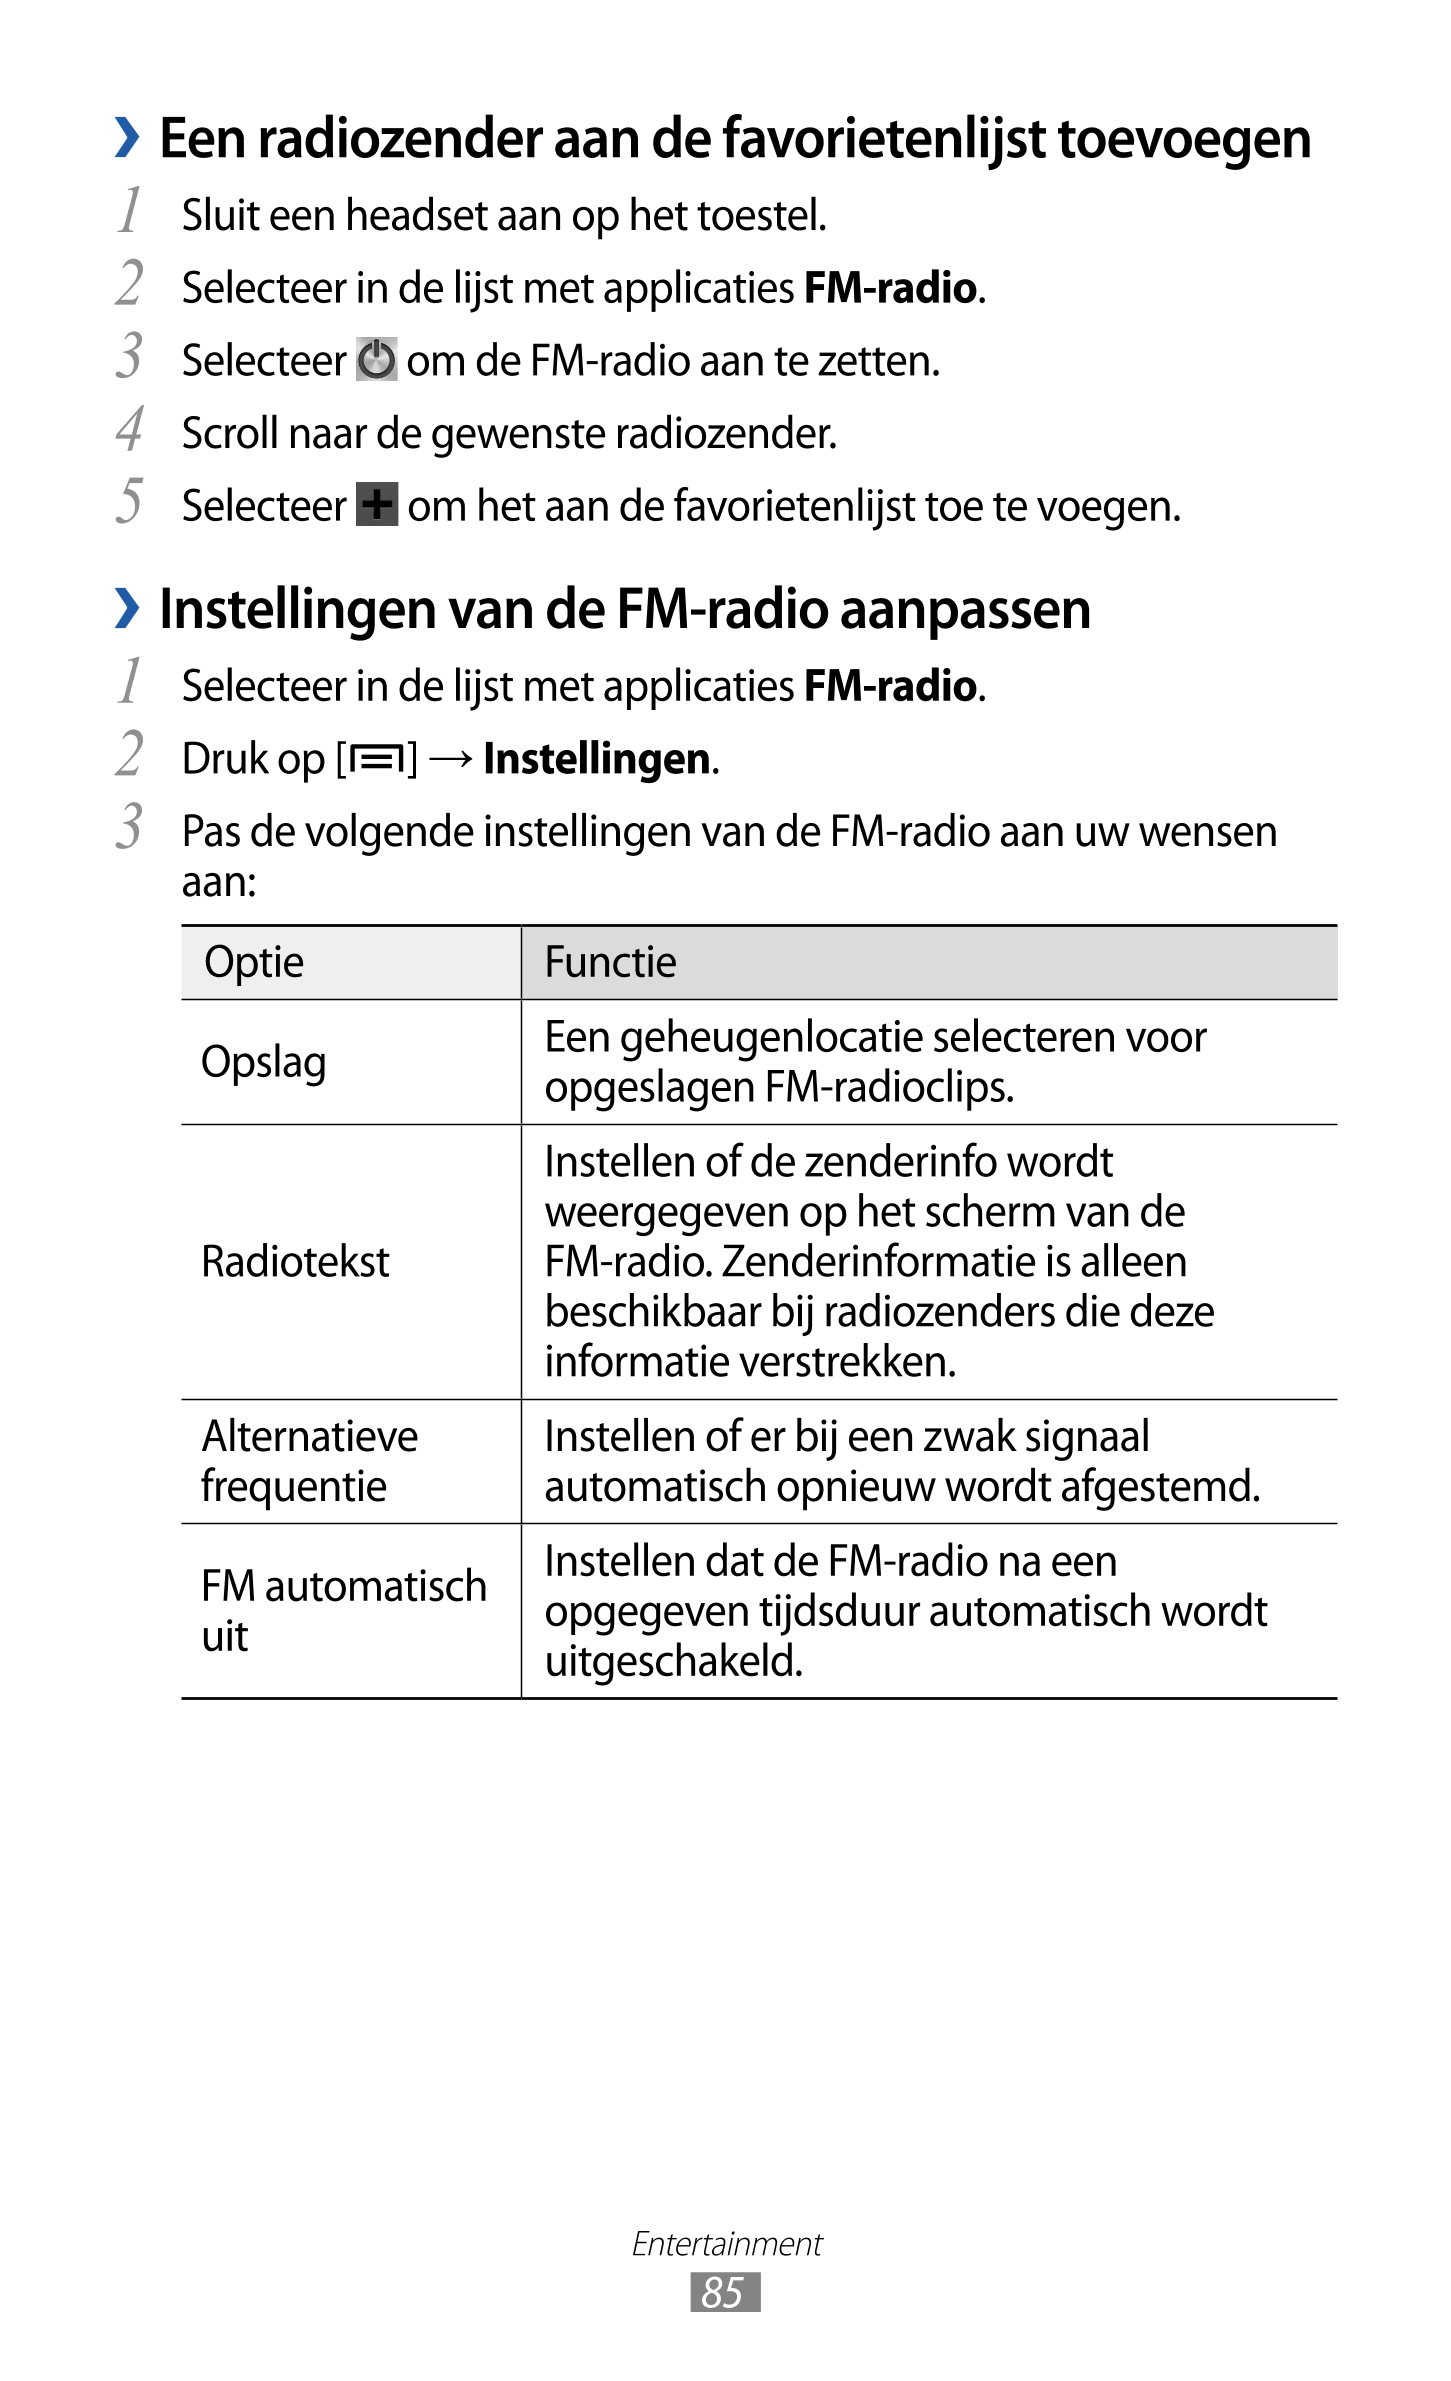   Een radiozender aan de favorietenlijst toevoegen
1  Sluit een headset aan op het toestel.
2  Selecteer in de lijst met applica